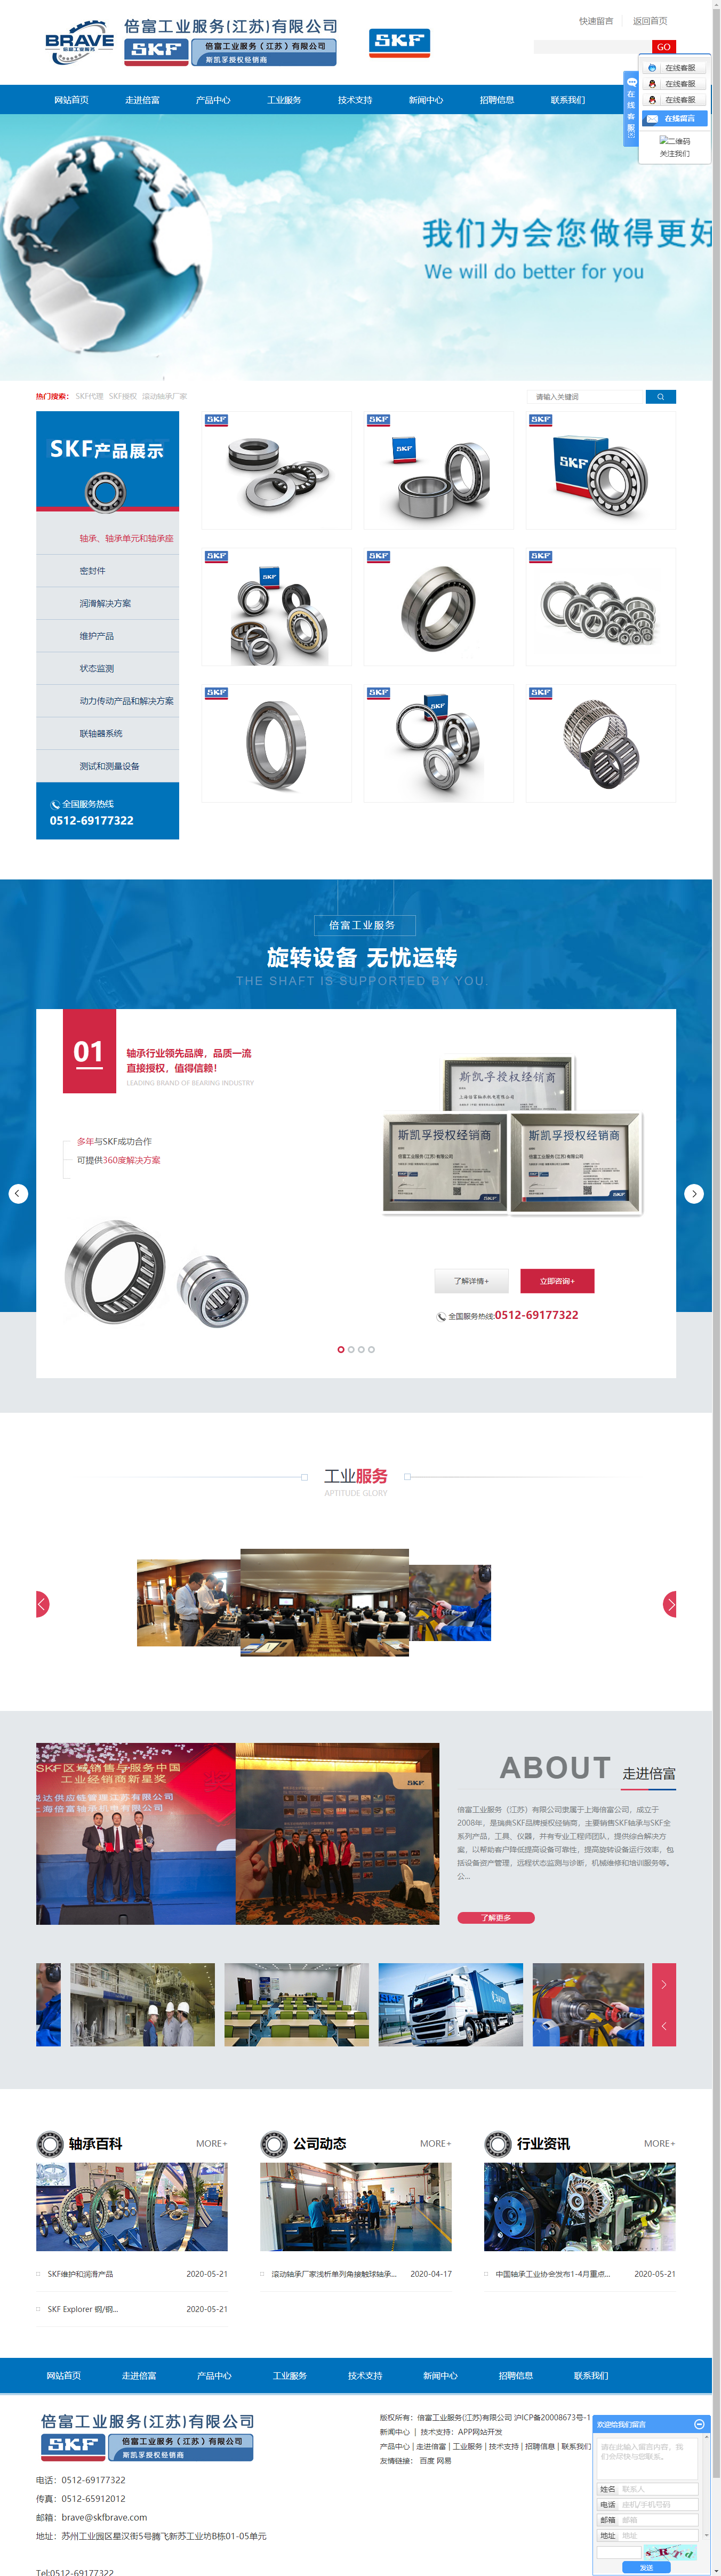 上海倍富轴承机电有限公司网站案例